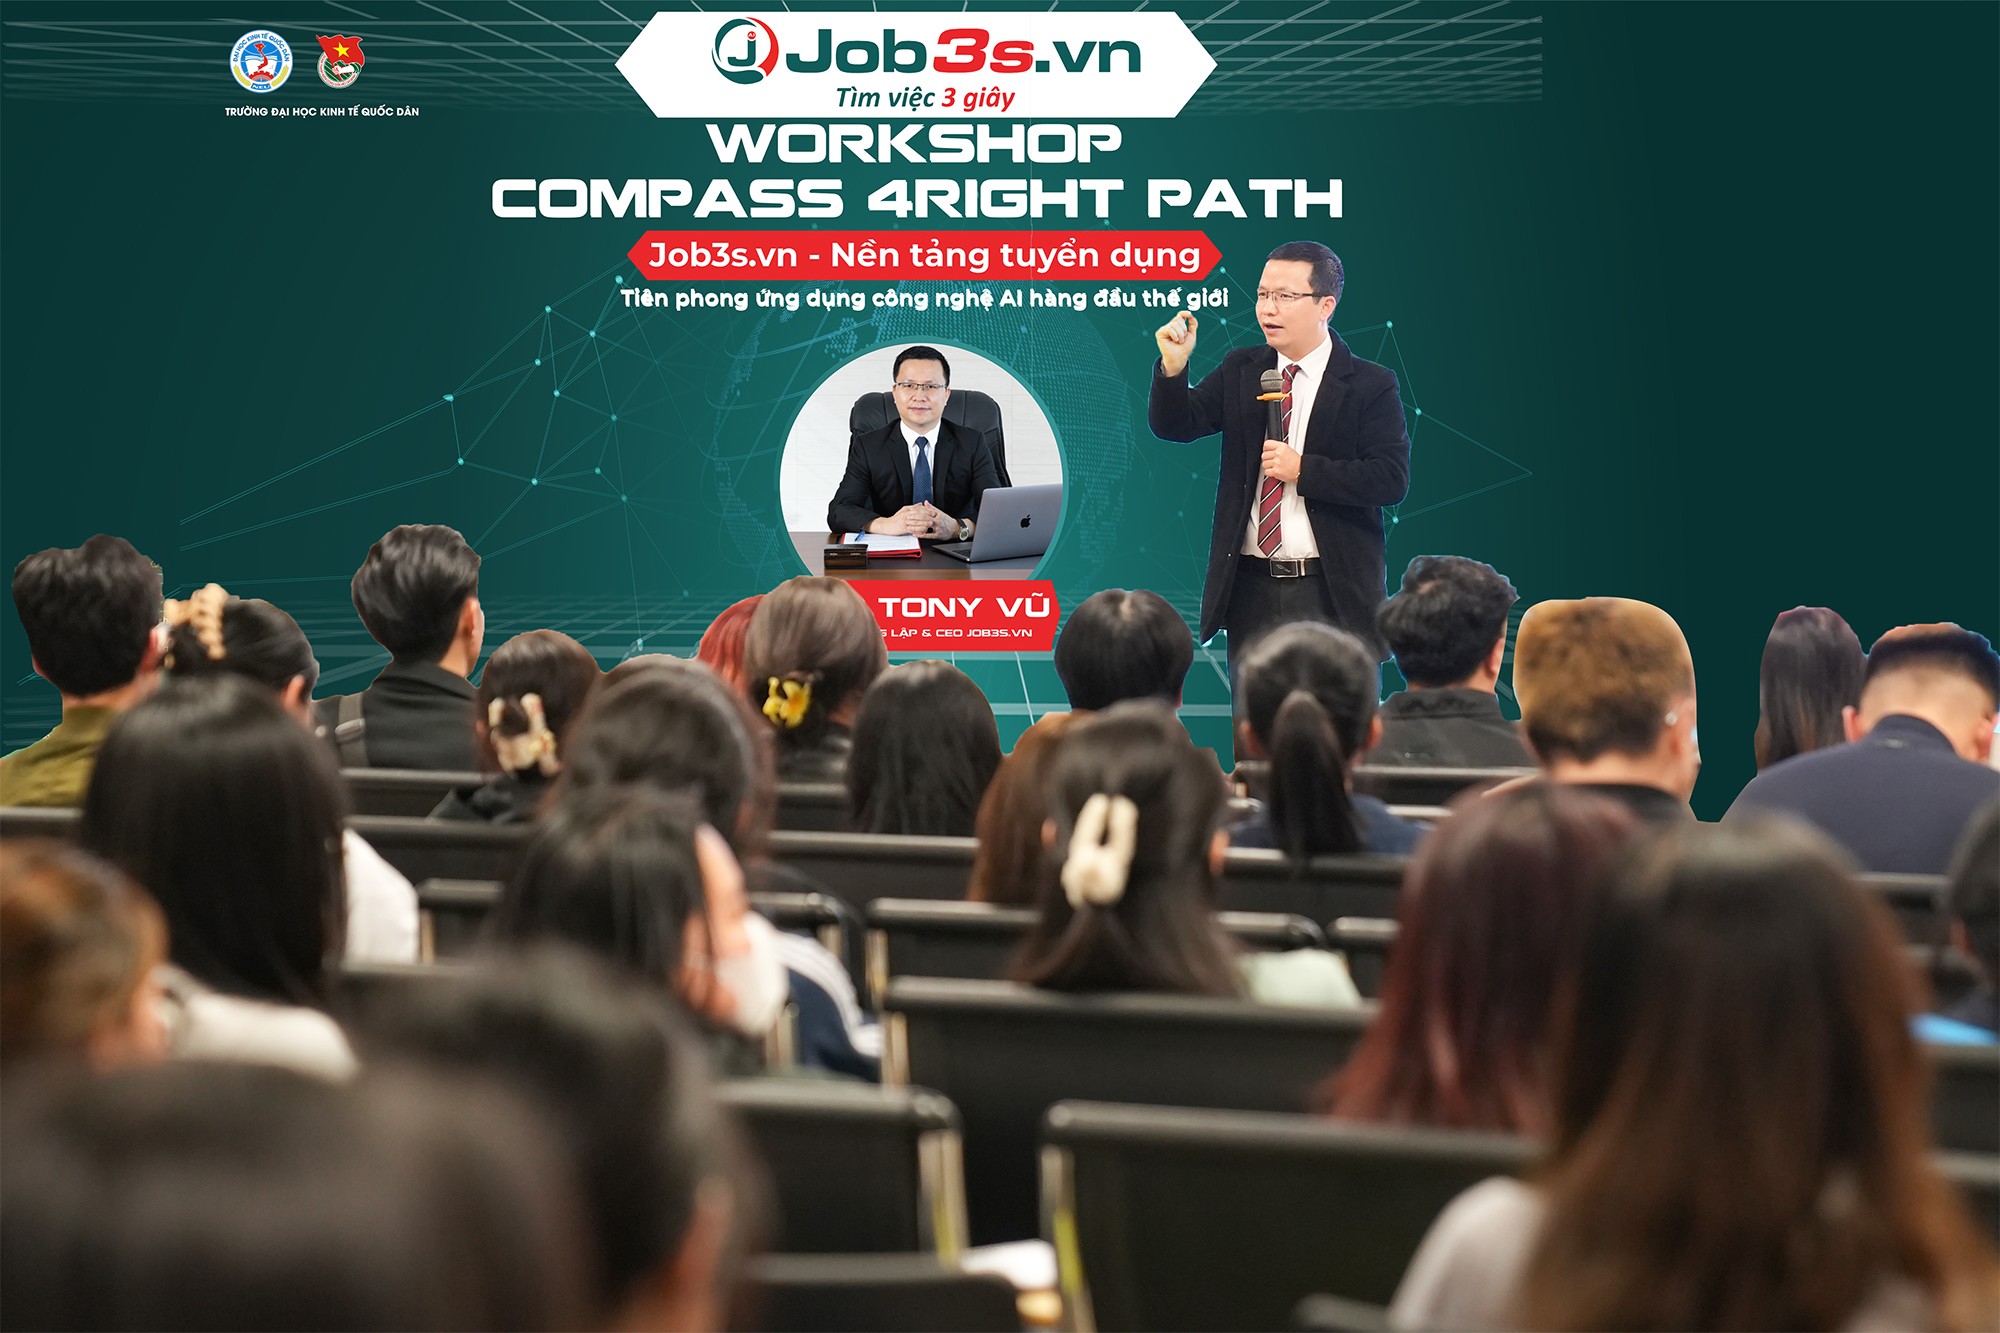 CEO Tony Vũ của Job3s.vn chia sẻ về cách viết CV cùng kỹ năng phản biện trong tìm kiếm và ứng tuyển việc làm tại workshop